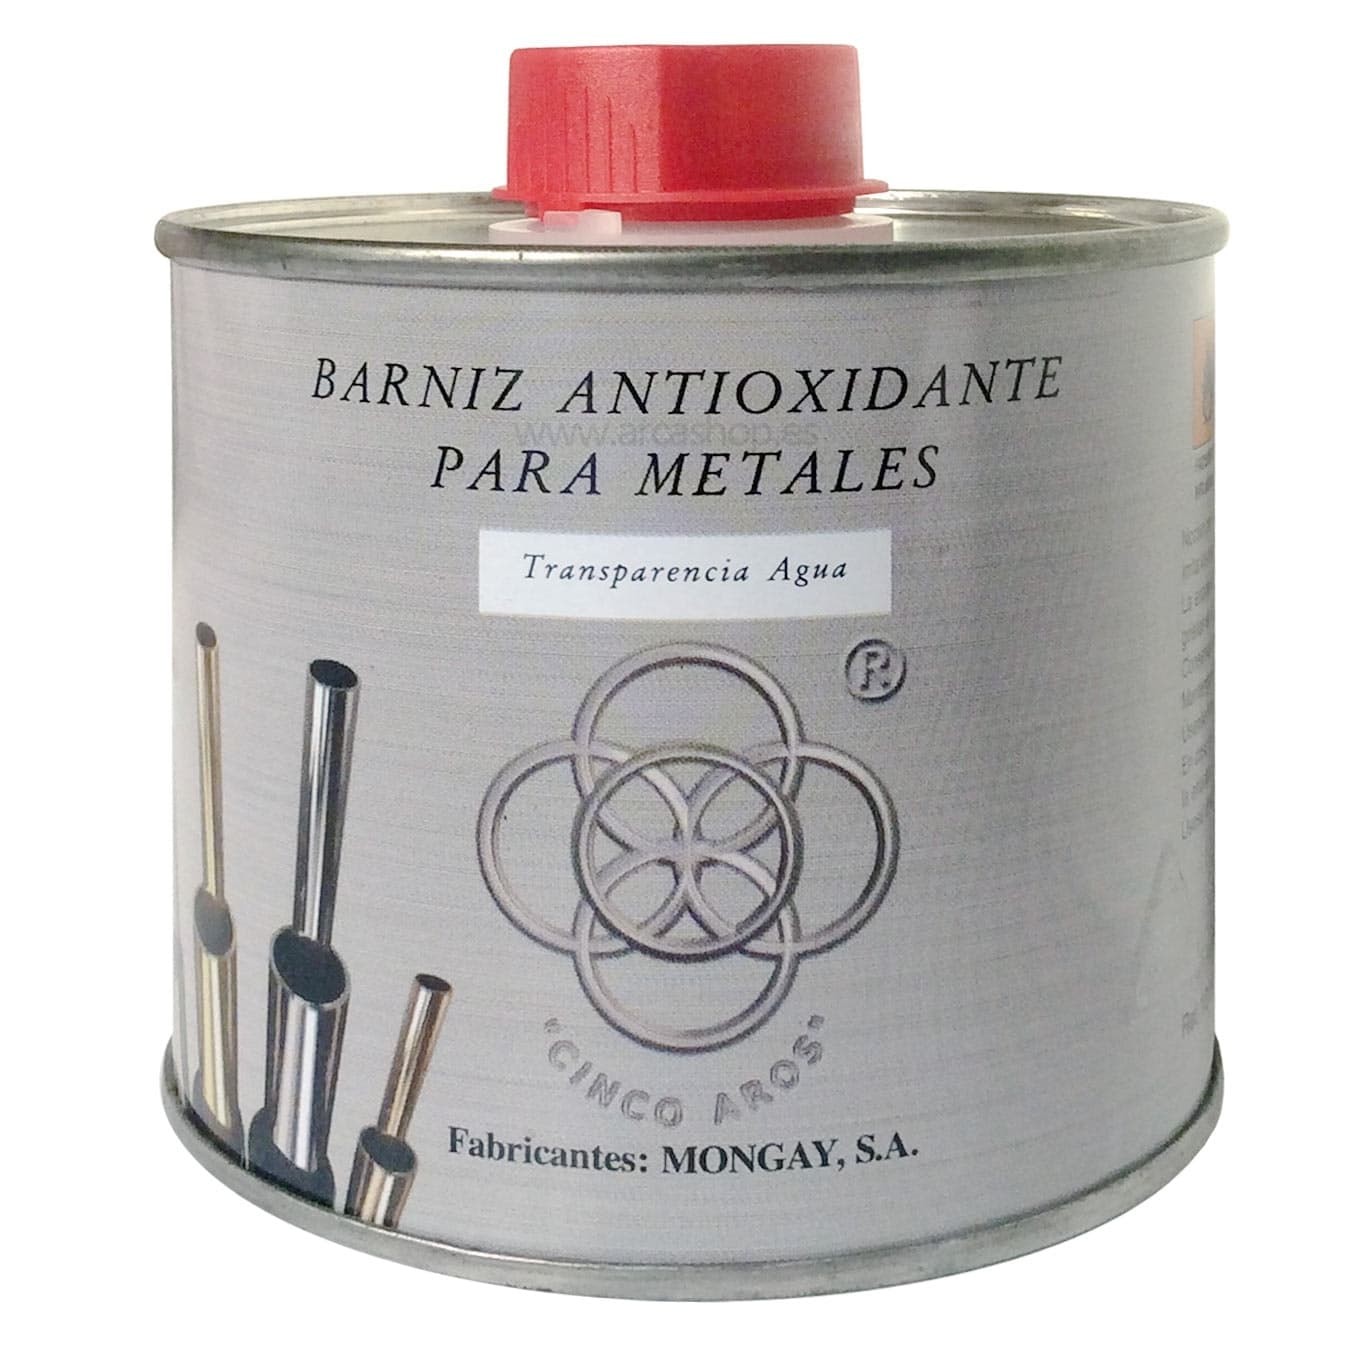 Barniz Metales cobre, latón, aluminio, plata, niquelados, cromados. Protección metales y antioxidante